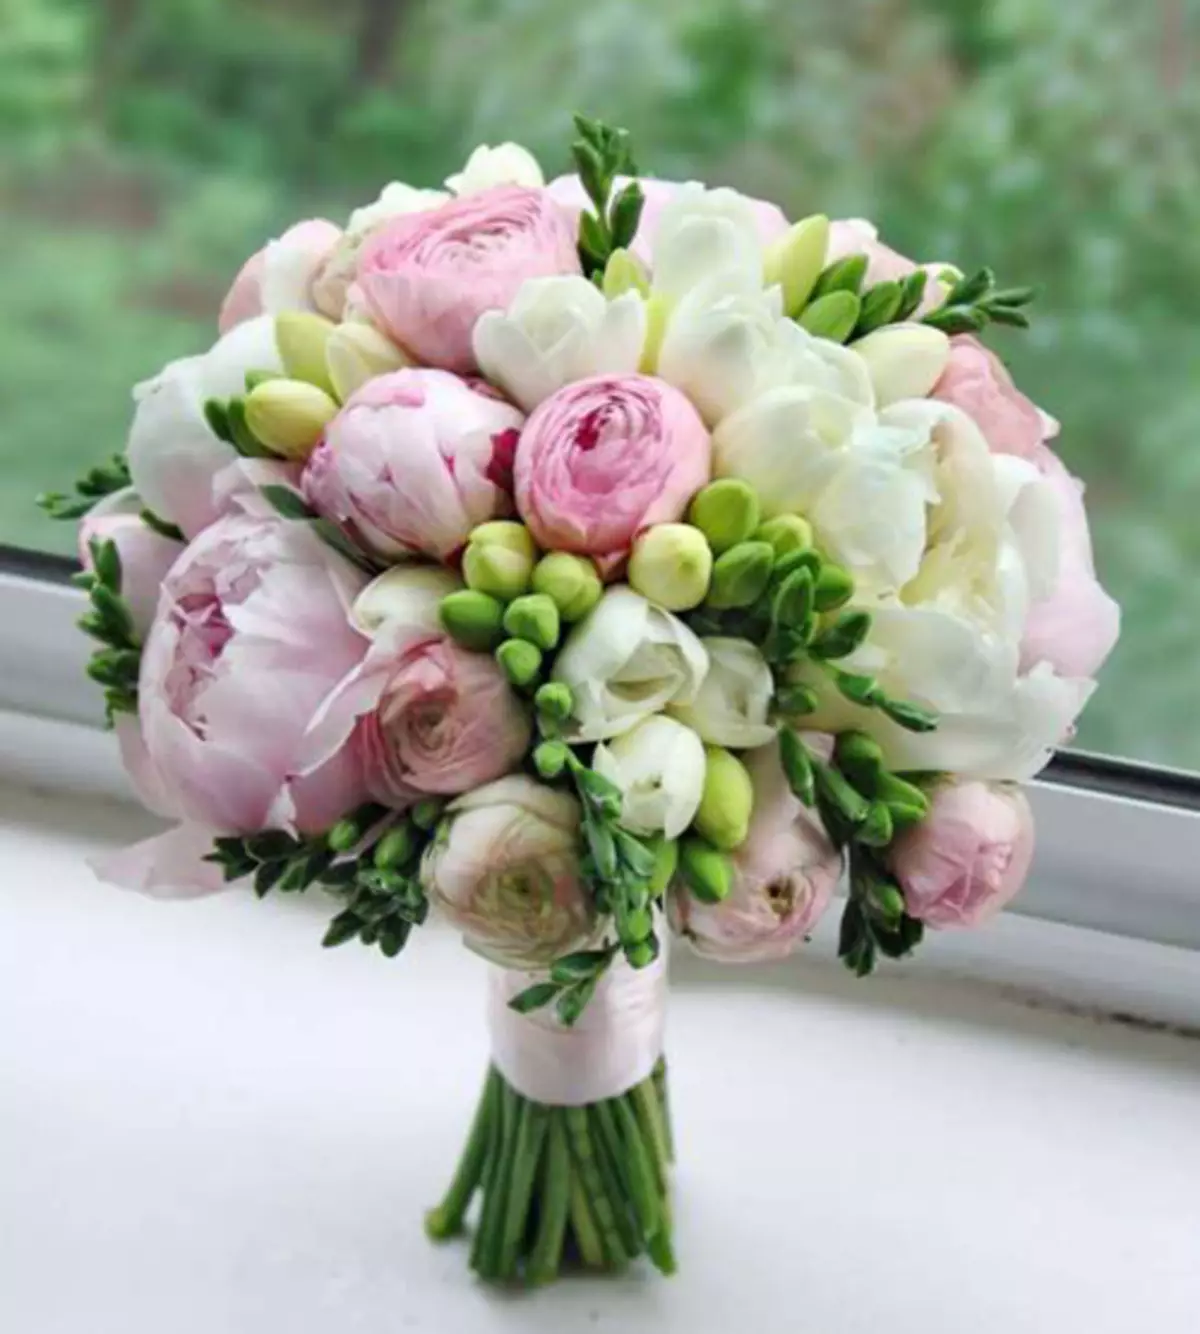 모란의 결혼식 꽃다발 (108 사진) : 흰색 수문과 빨간 칼라와의 조합, 결혼식 꽃다발의 부르고뉴, 라일락 및 자주색 꽃의 조합 8013_69